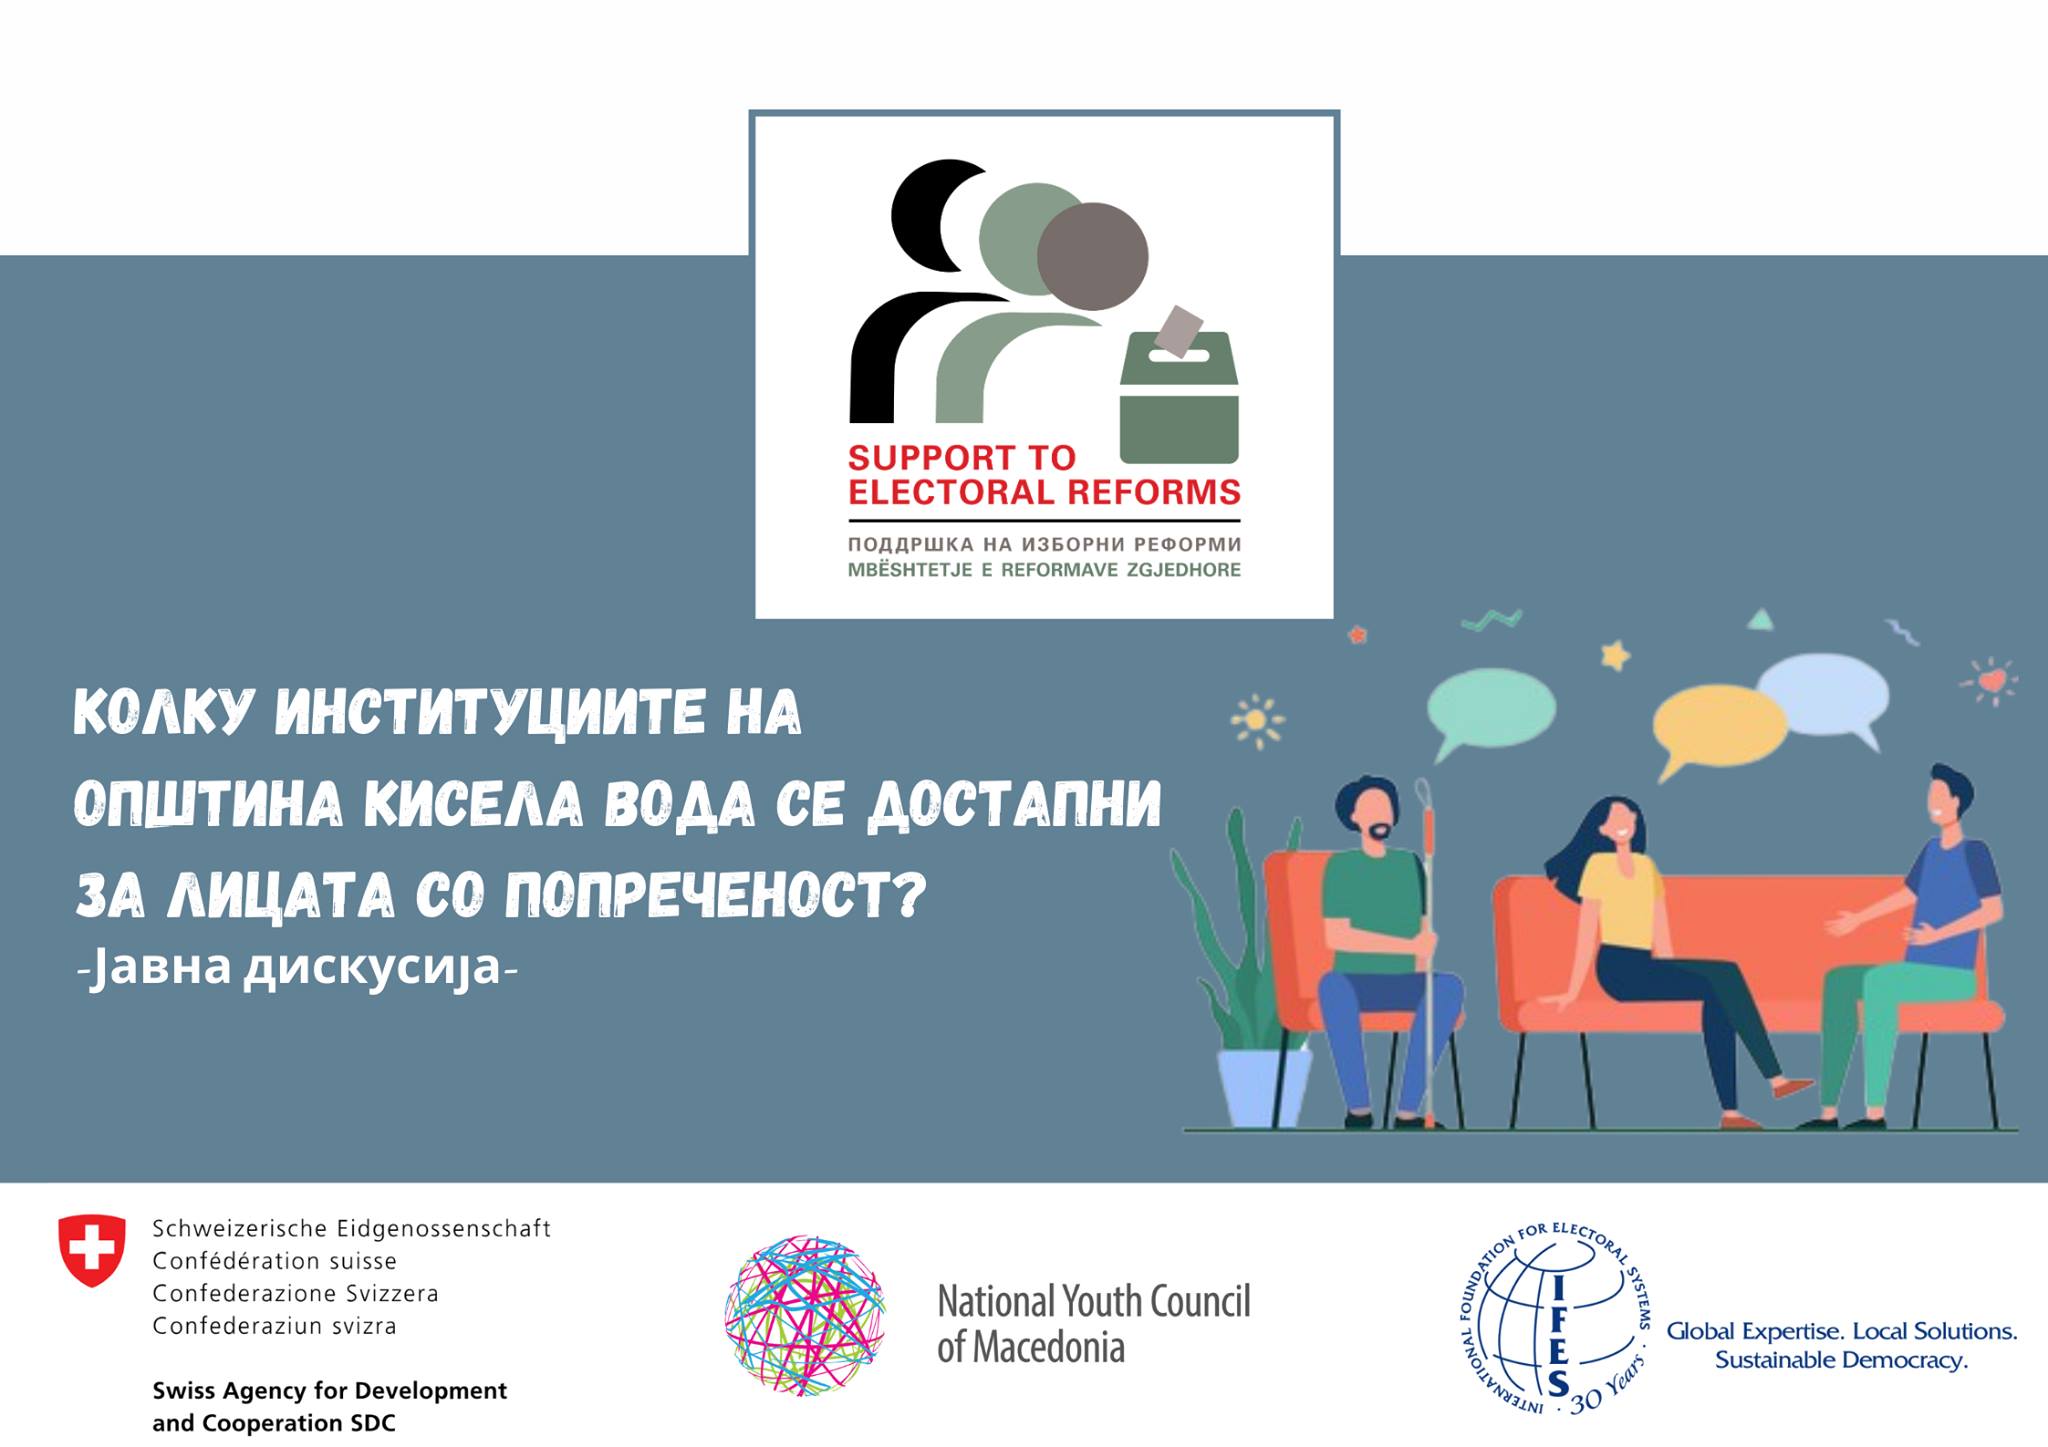 Debat publik: Përmirësimi i qasjes në institucionet publike në komunën e Kisela Vodës